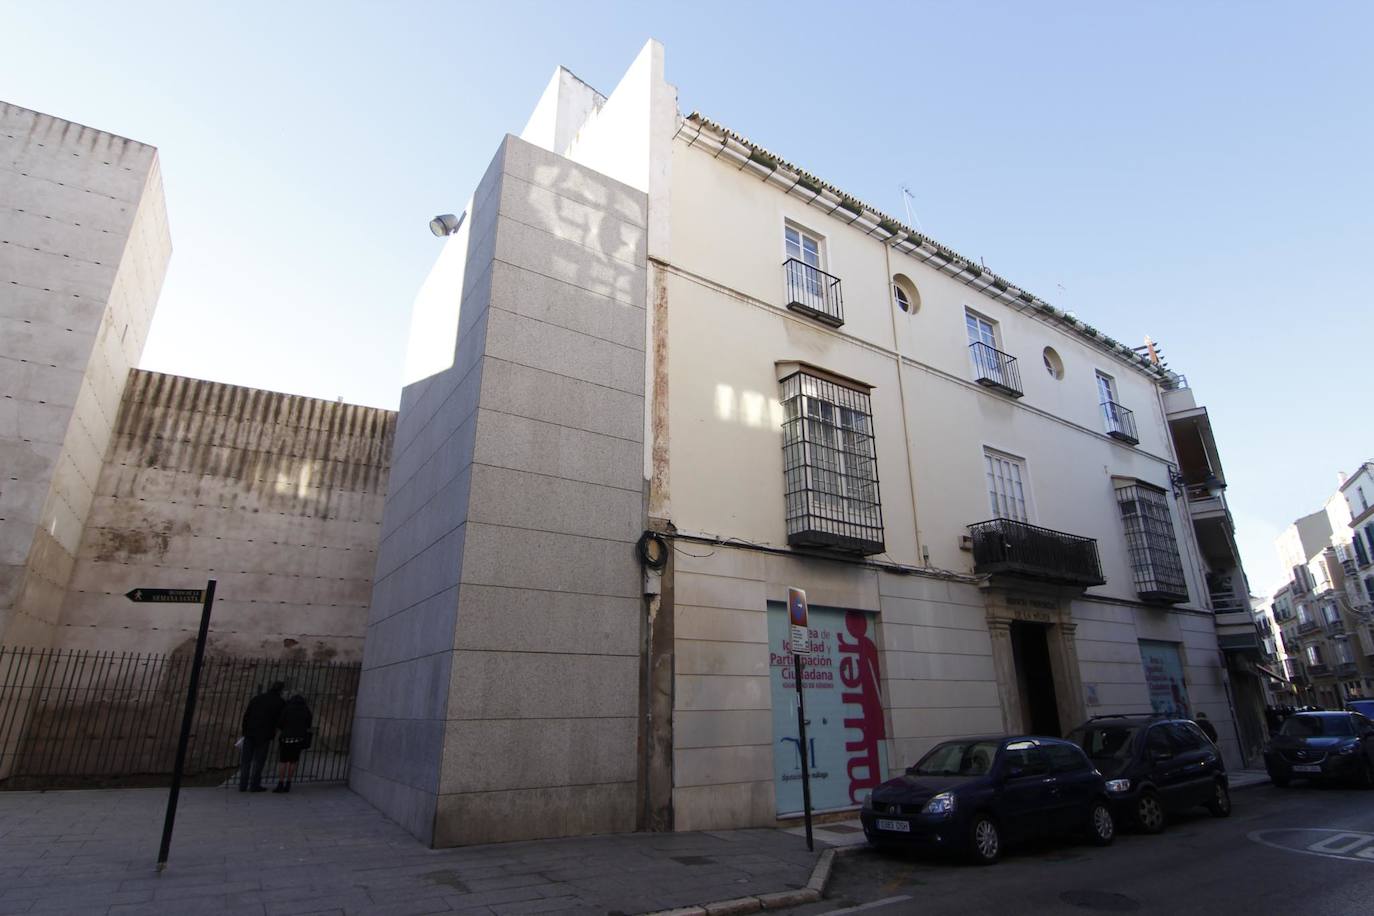 El Palacio de Valdeflores, una joya escondida en el Centro de Málaga que por fin recuperará su brillo